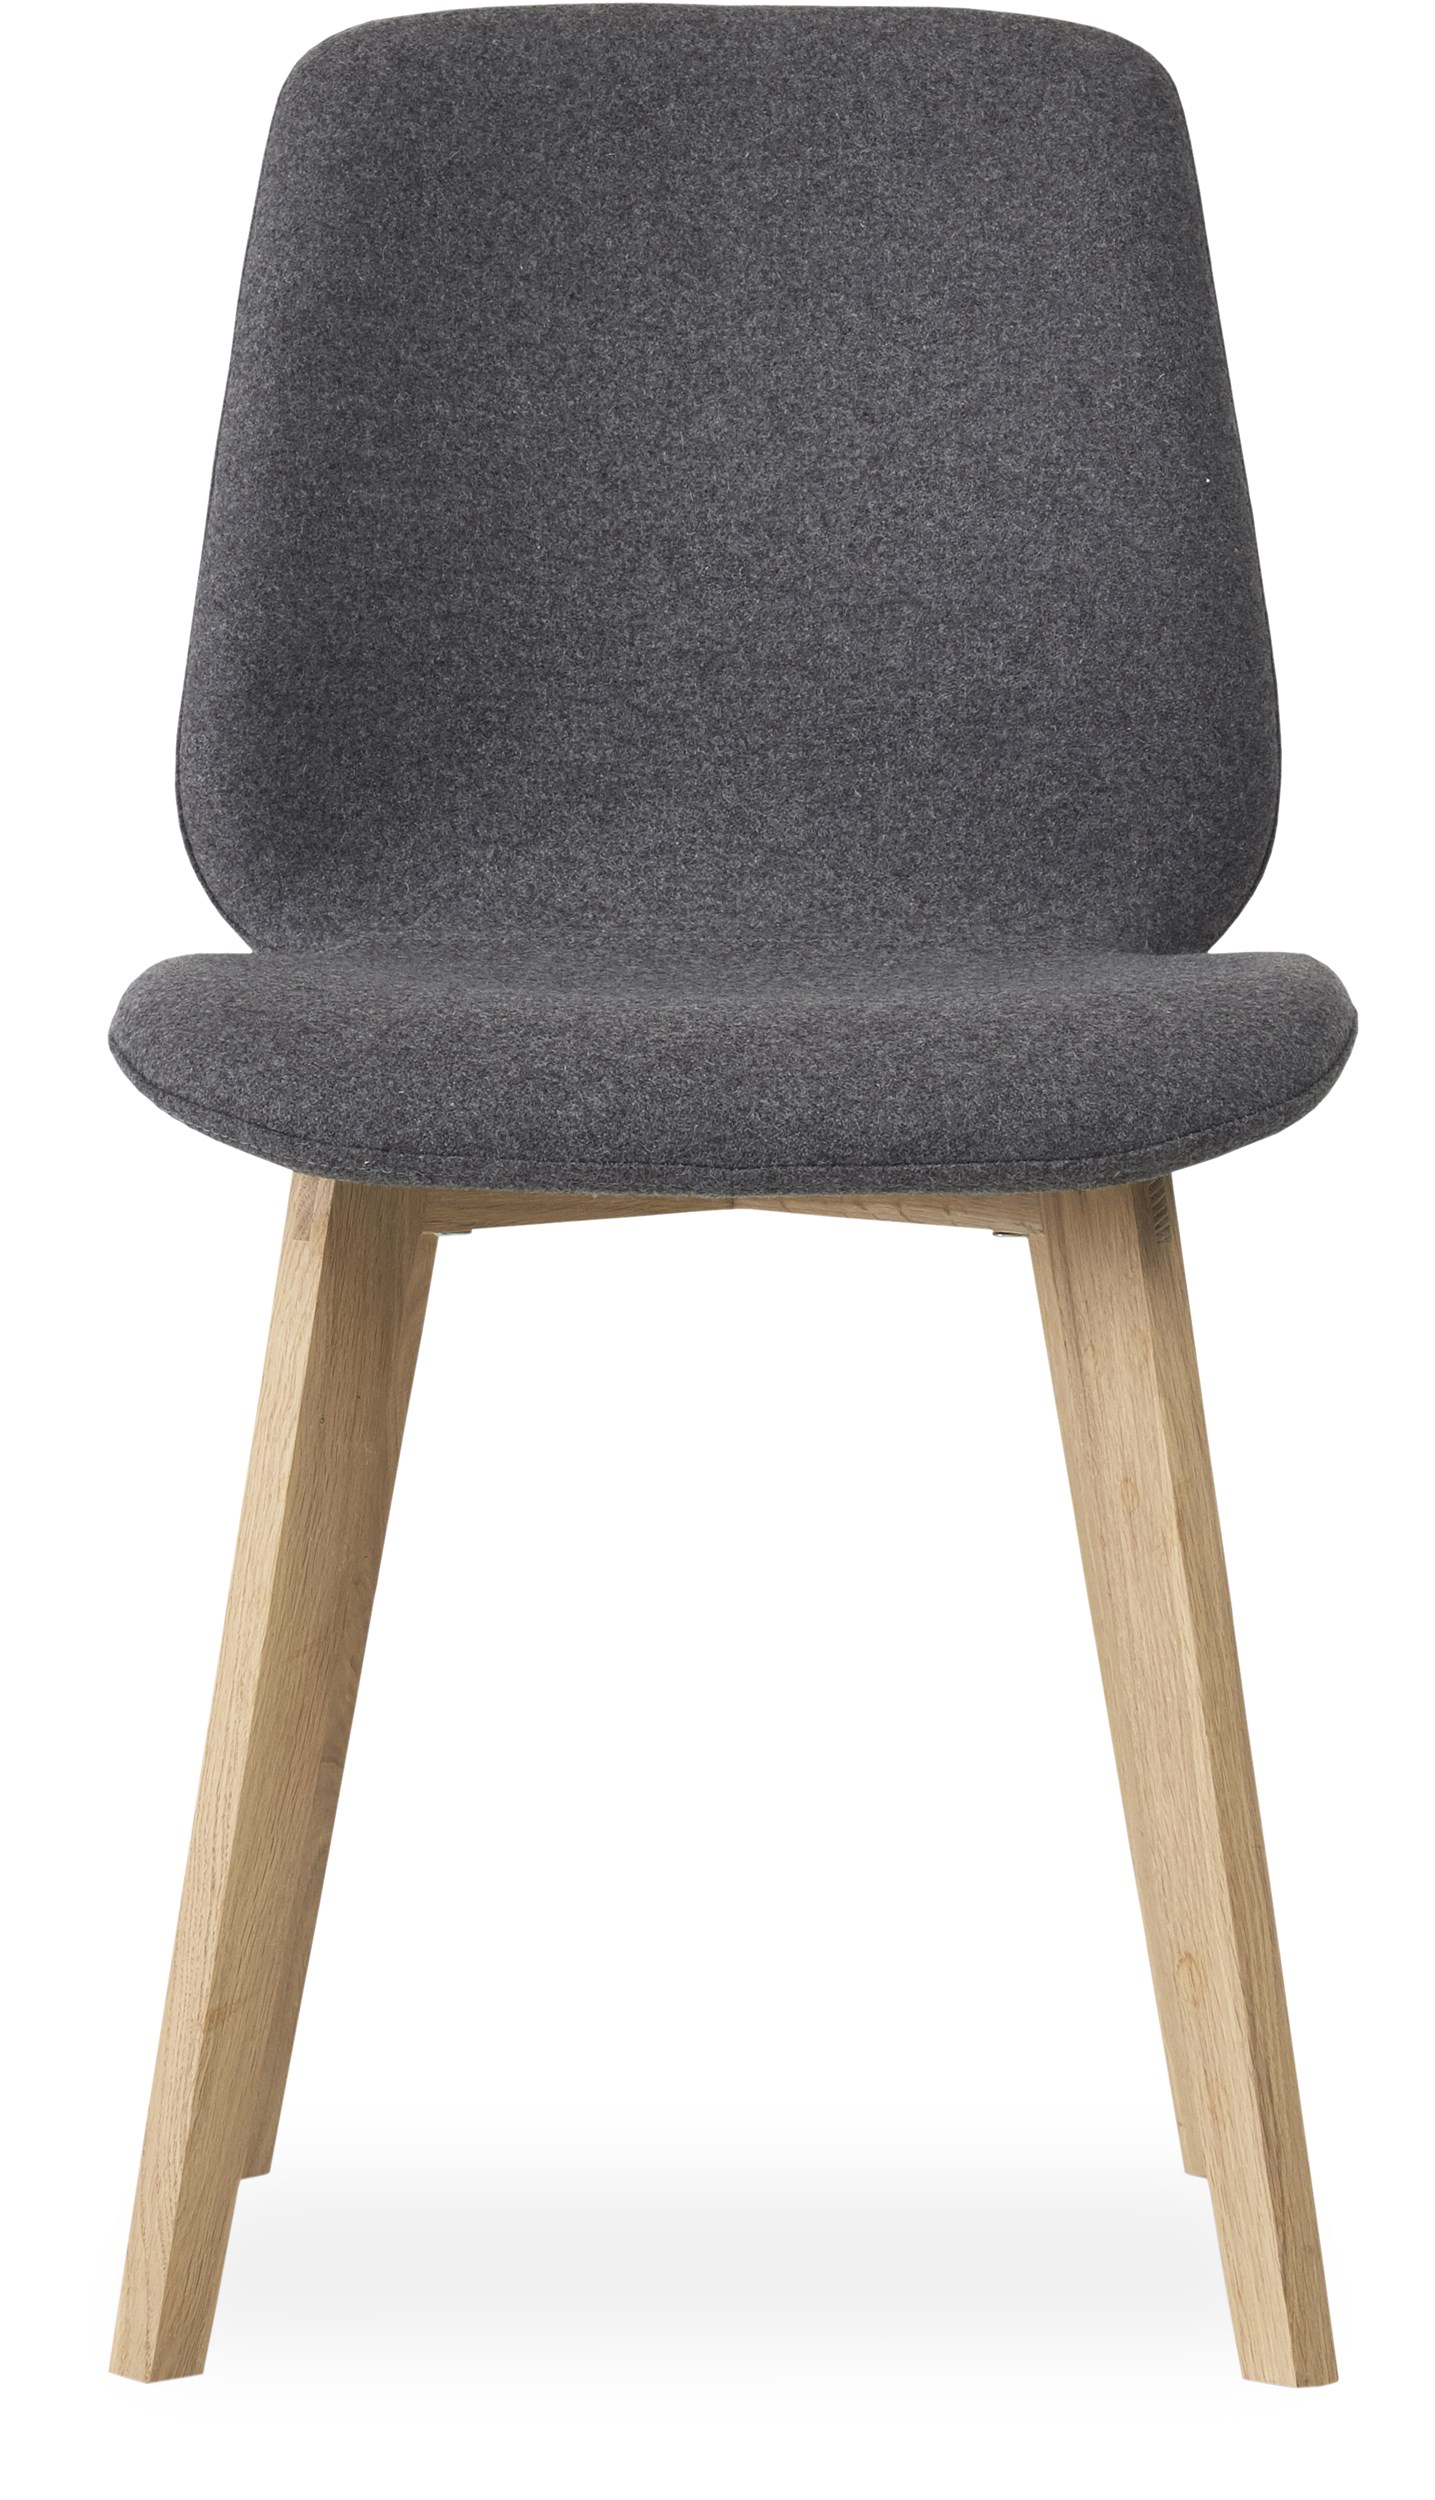 Share matstol - Sits i 26 Dusty grey filt och edgeben i vitpigmenterad mattlackad ek